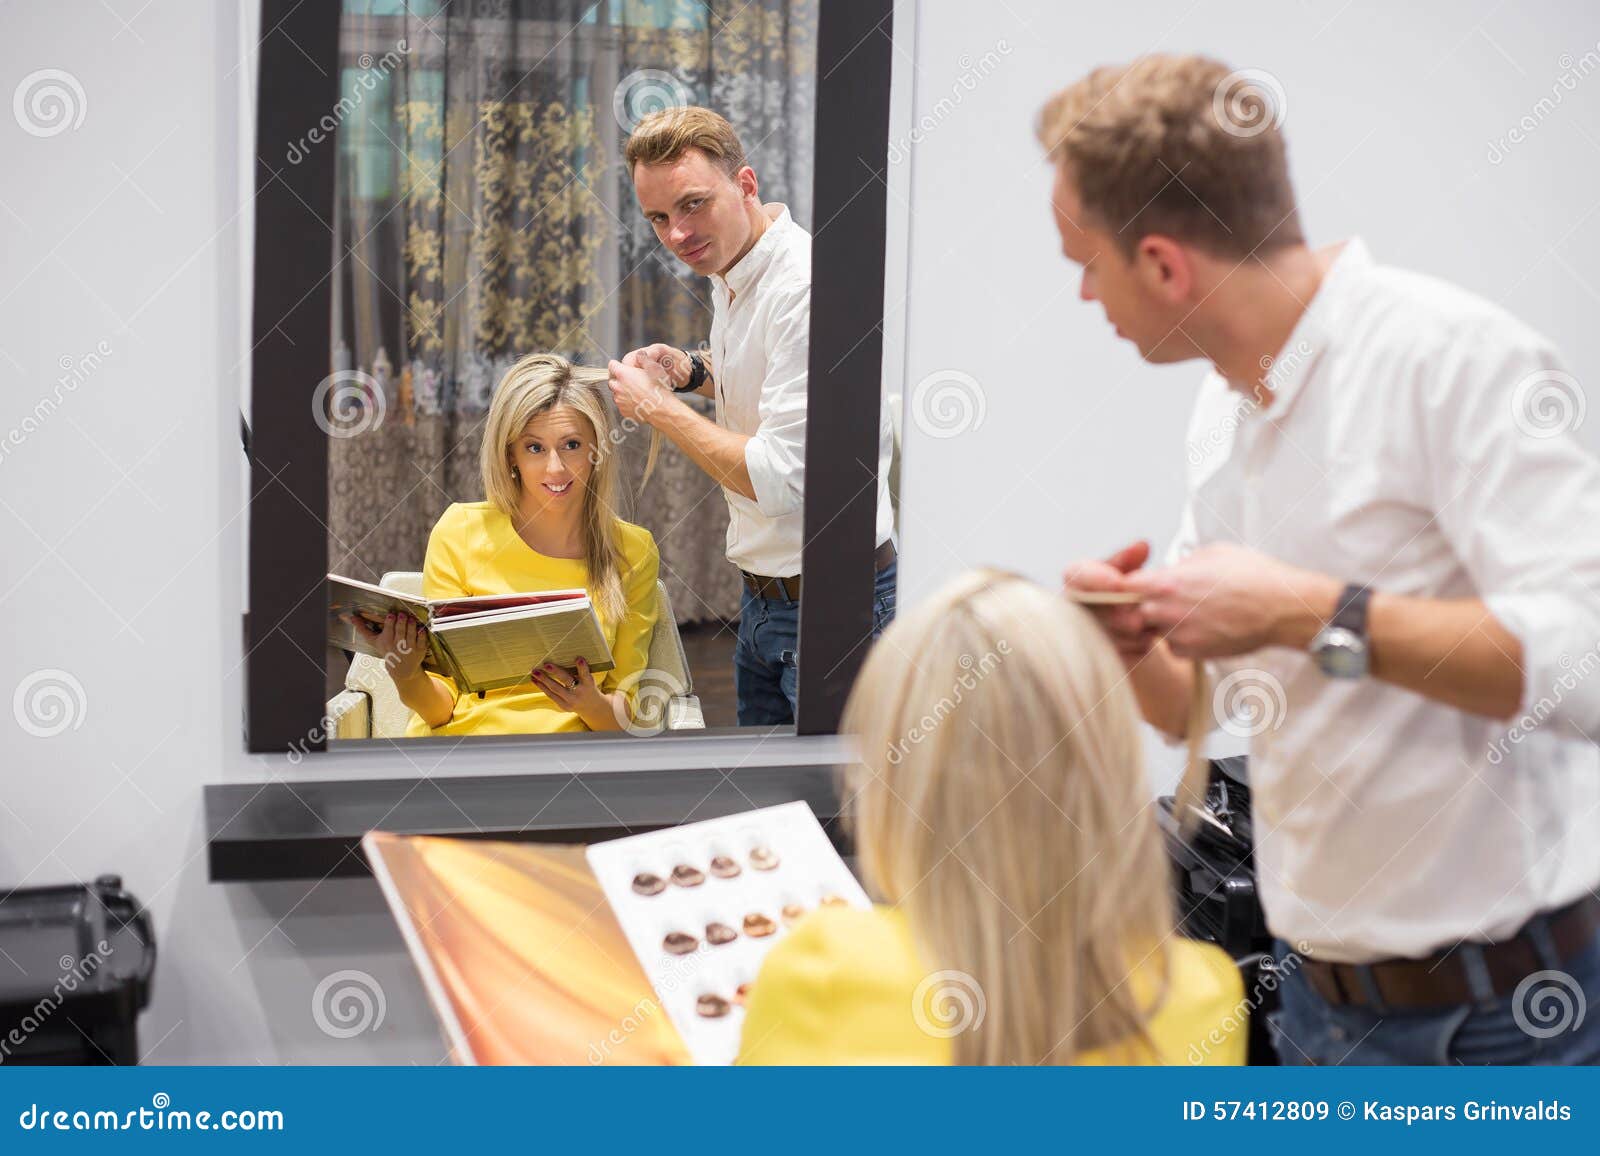 Blonde Hair Salon Styles - wide 3